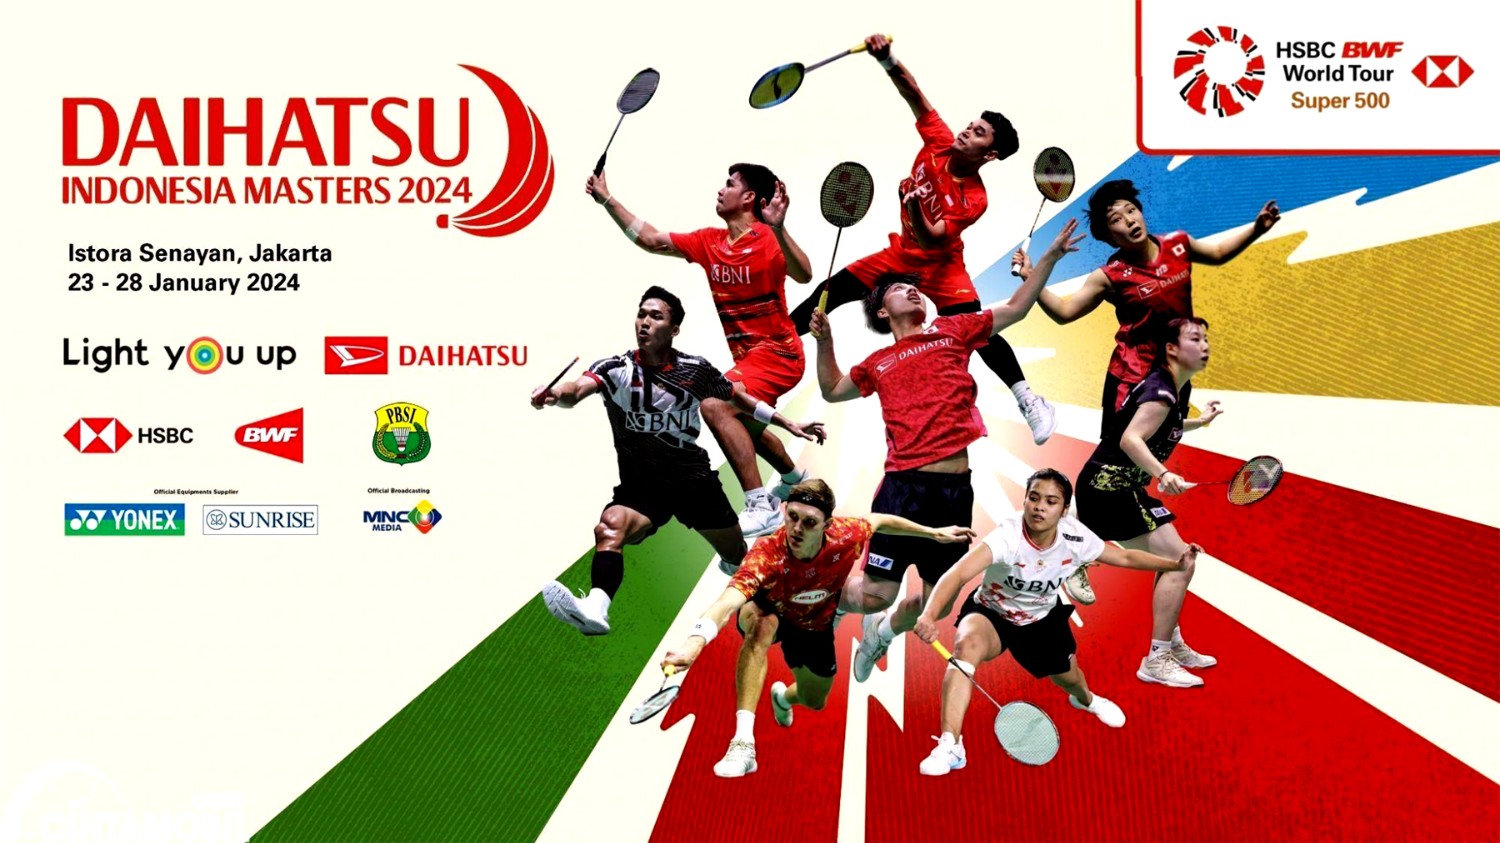 เชียร์สด ! แบดมินตัน DAIHATSU Indonesia Masters 2024 รอบ 32 คน (24